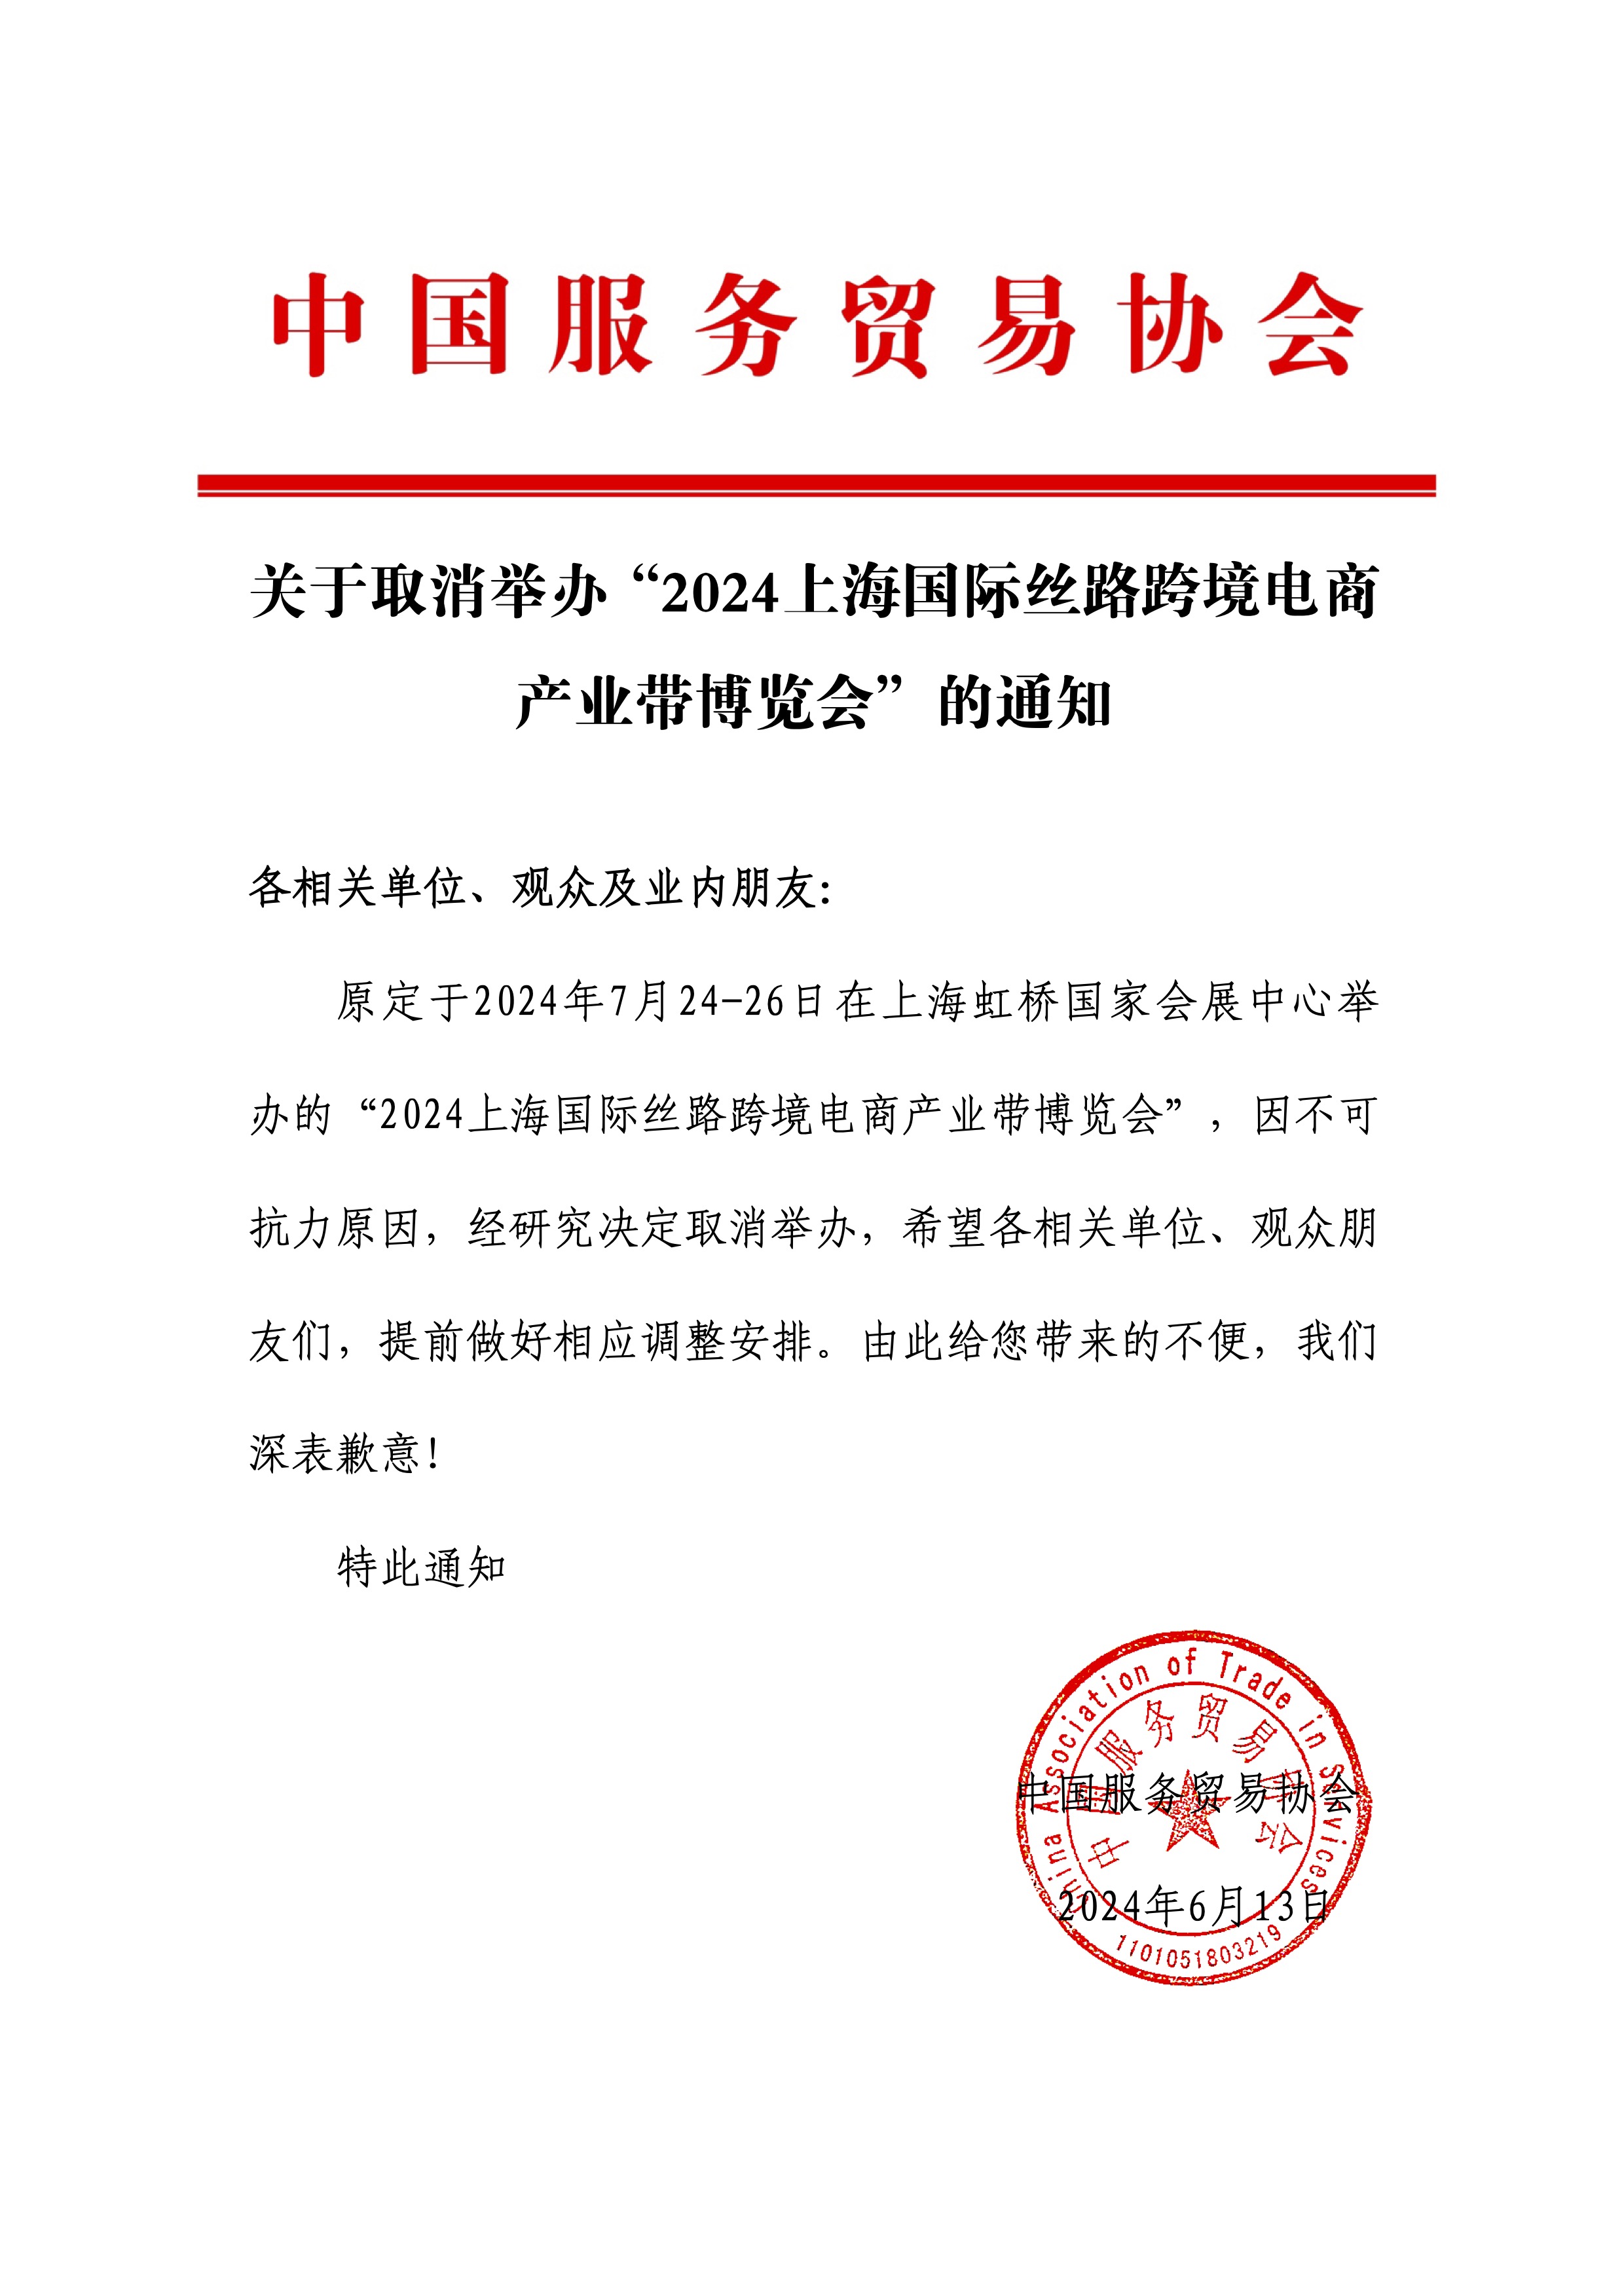 关于取消举办“2024上海国际丝路跨境电商产业带博览会”的通知